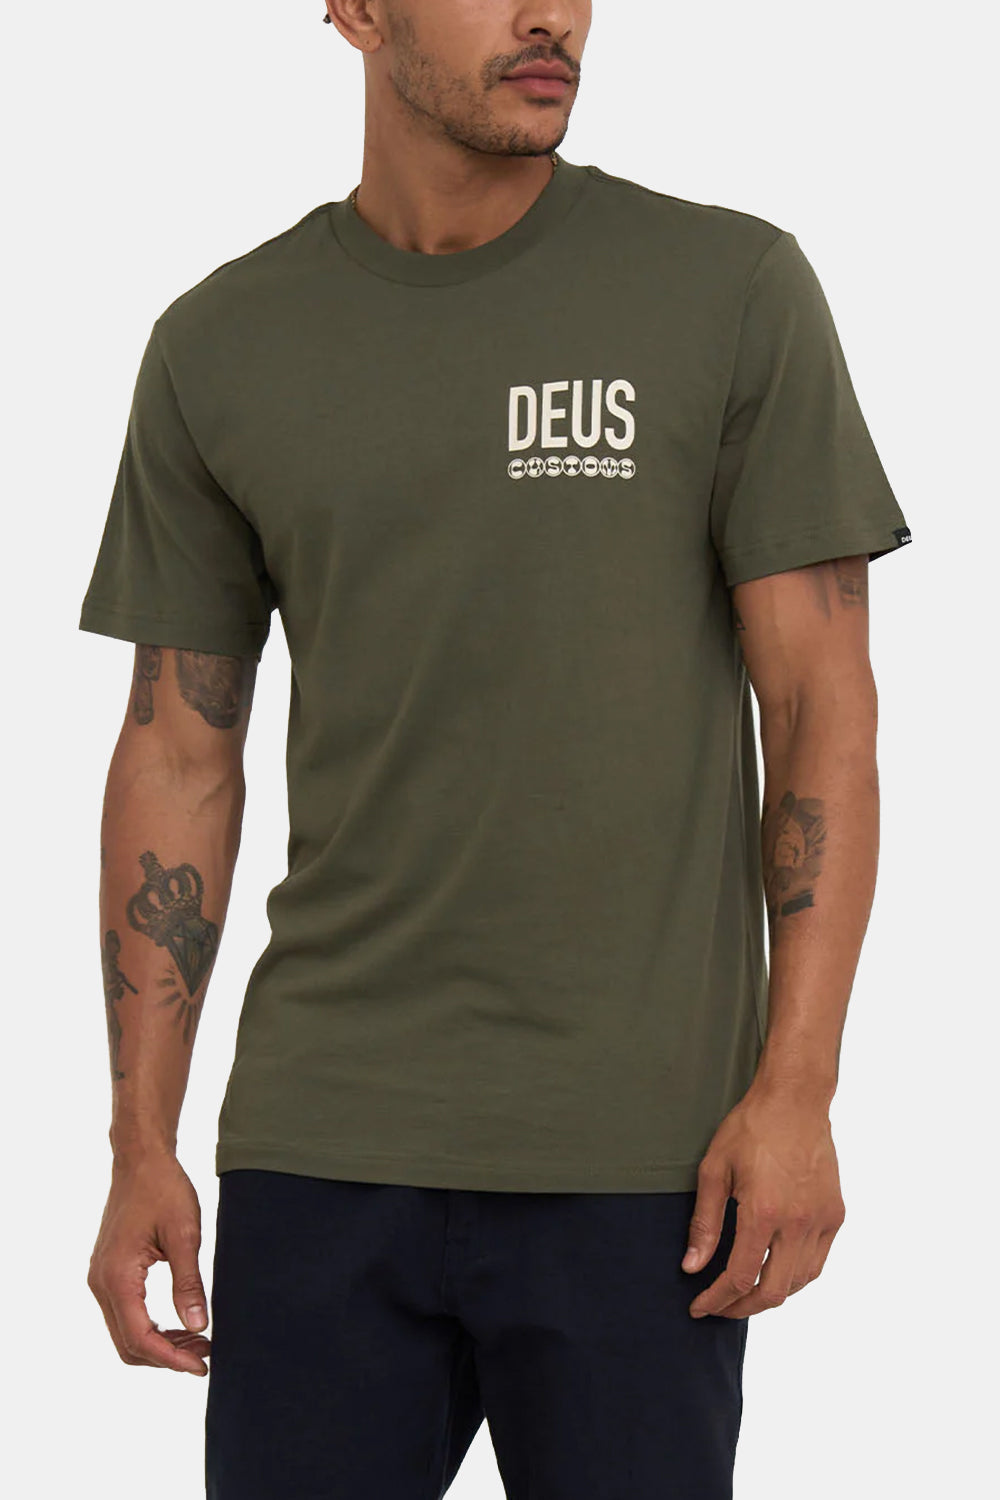 Deus Inline T-shirt (Clover)